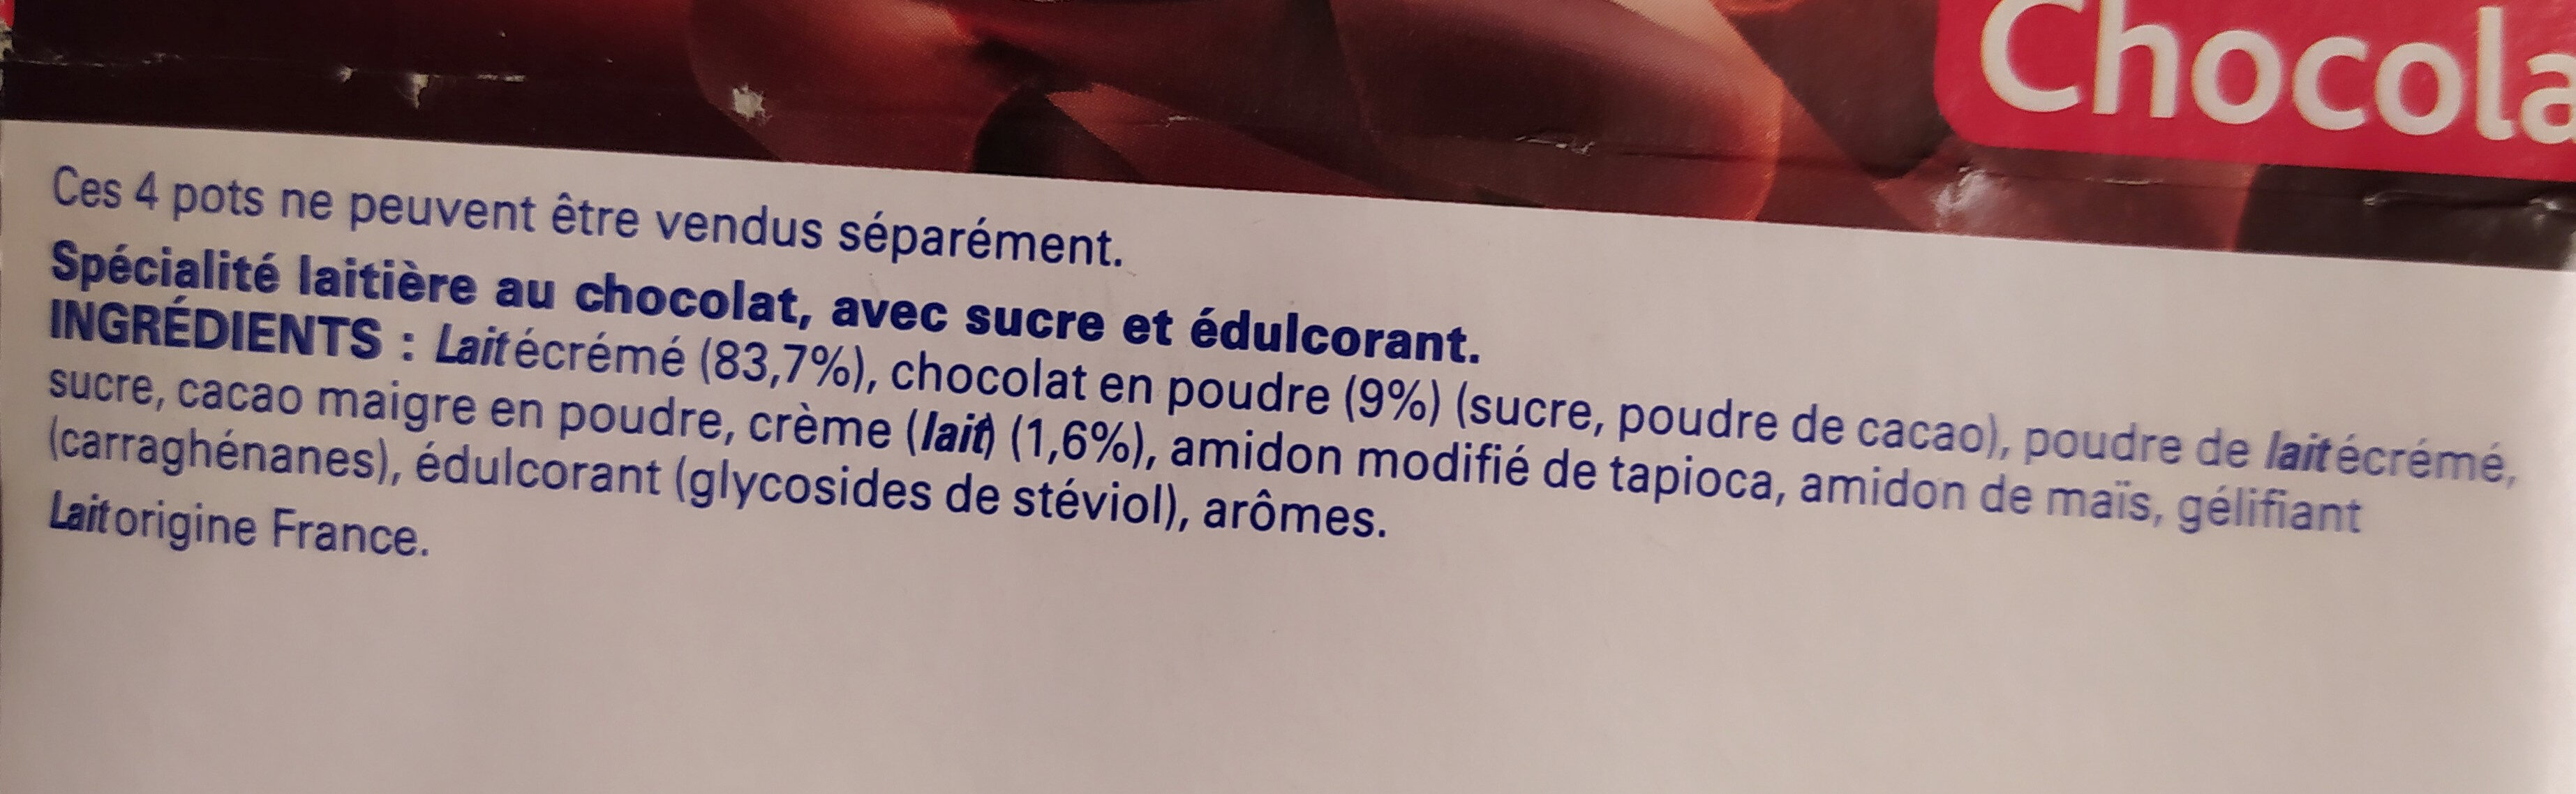 Sveltesse Ferme et Fondant Chocolat offre éco - Ingredients - fr